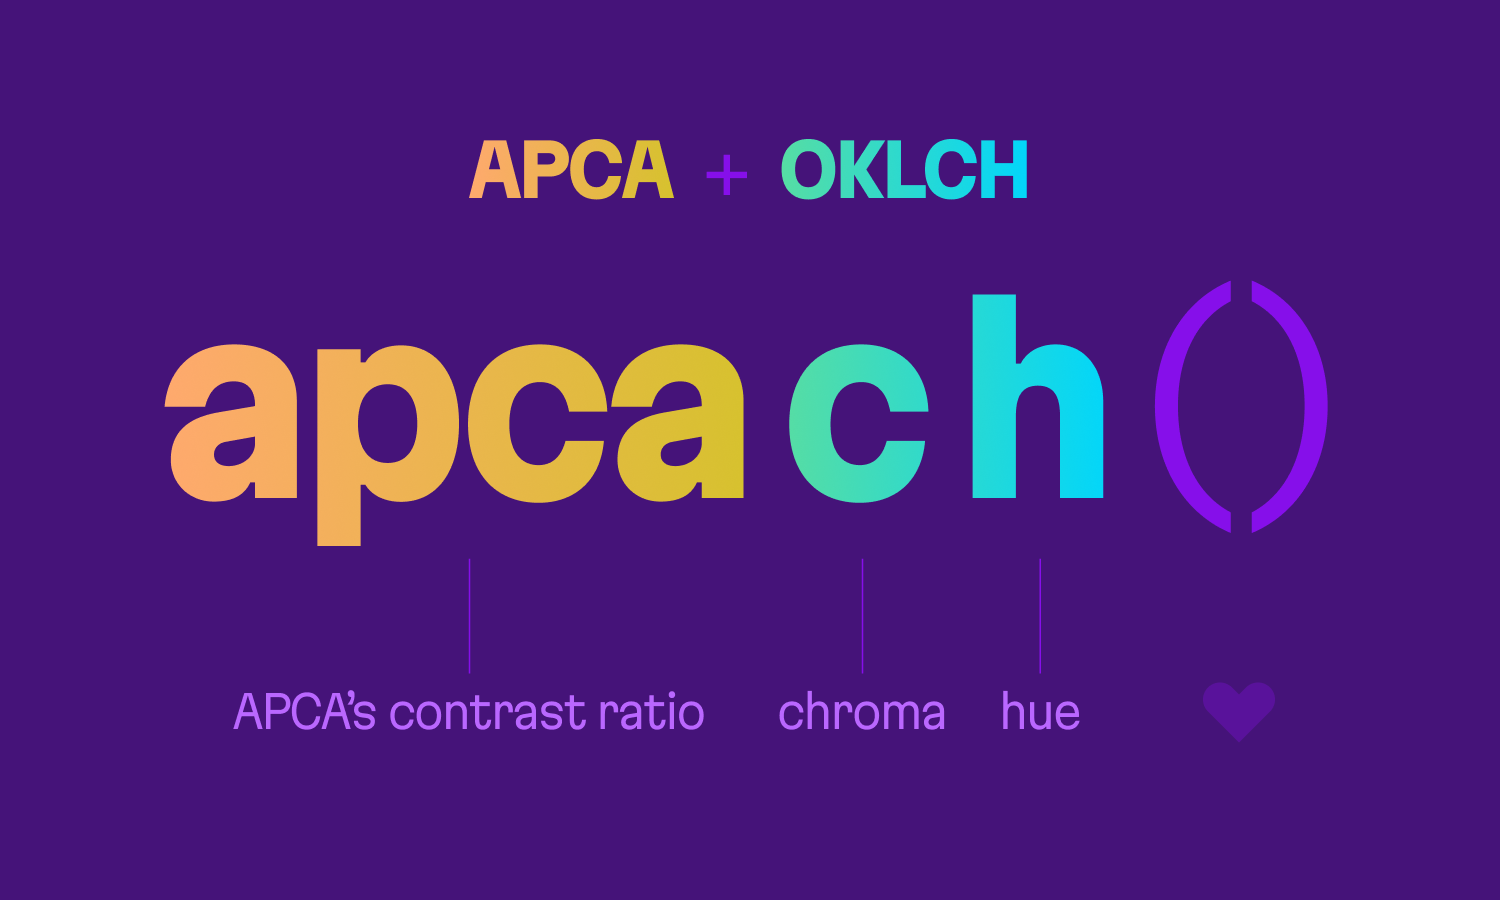 apcach = apca + oklch